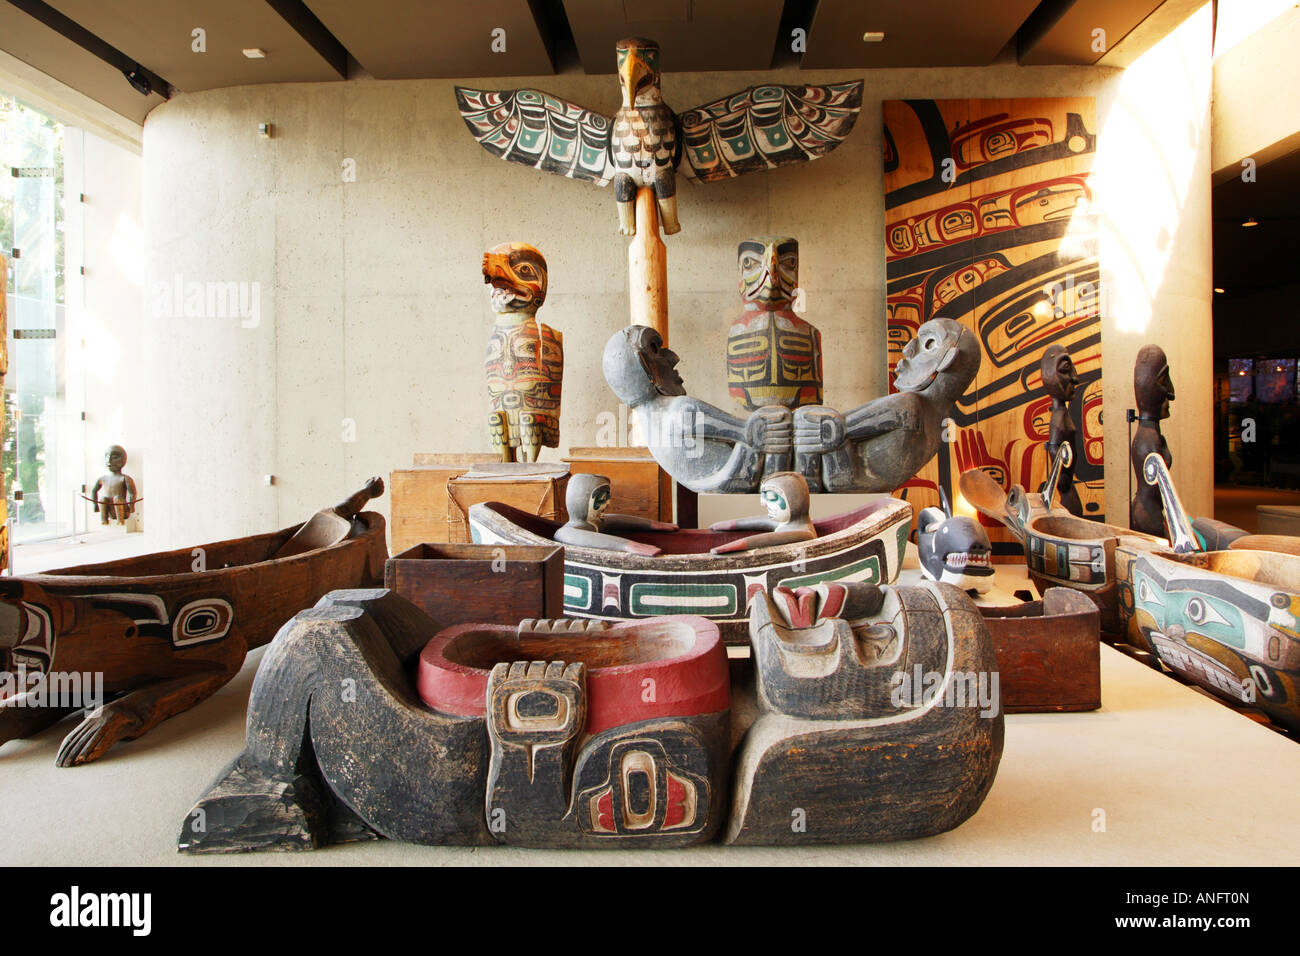 Le Haida Art Gallery, au Musée d'anthropologie situé sur l'Université de la Colombie-Britannique, Vancouver (Colombie-Britannique), Cana Banque D'Images